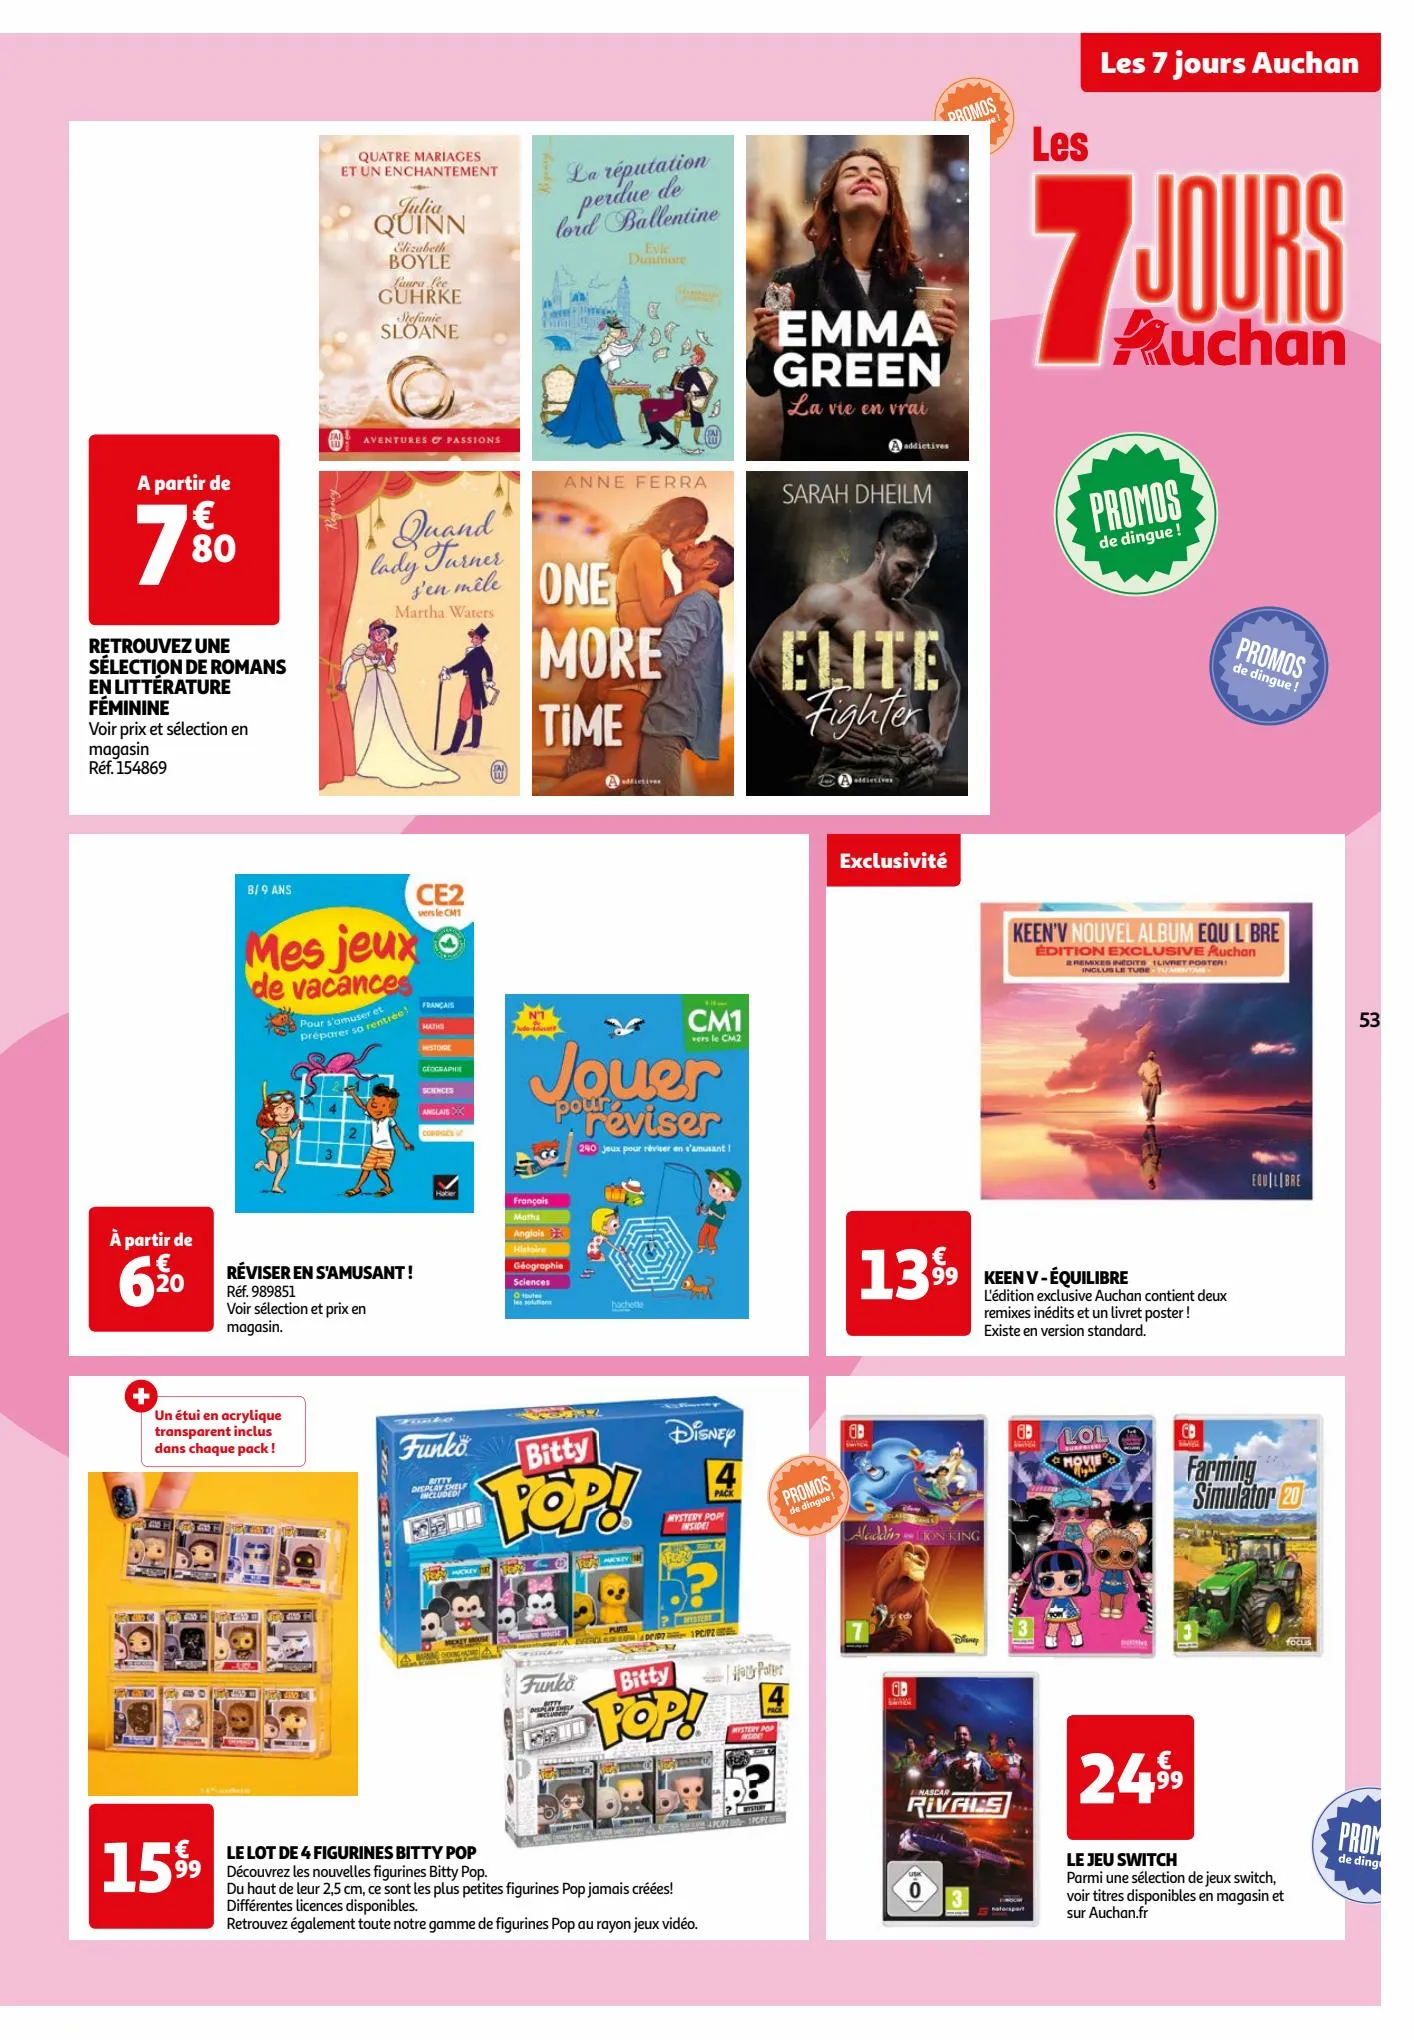 Catalogue Les 7 jours Auchan, page 00053